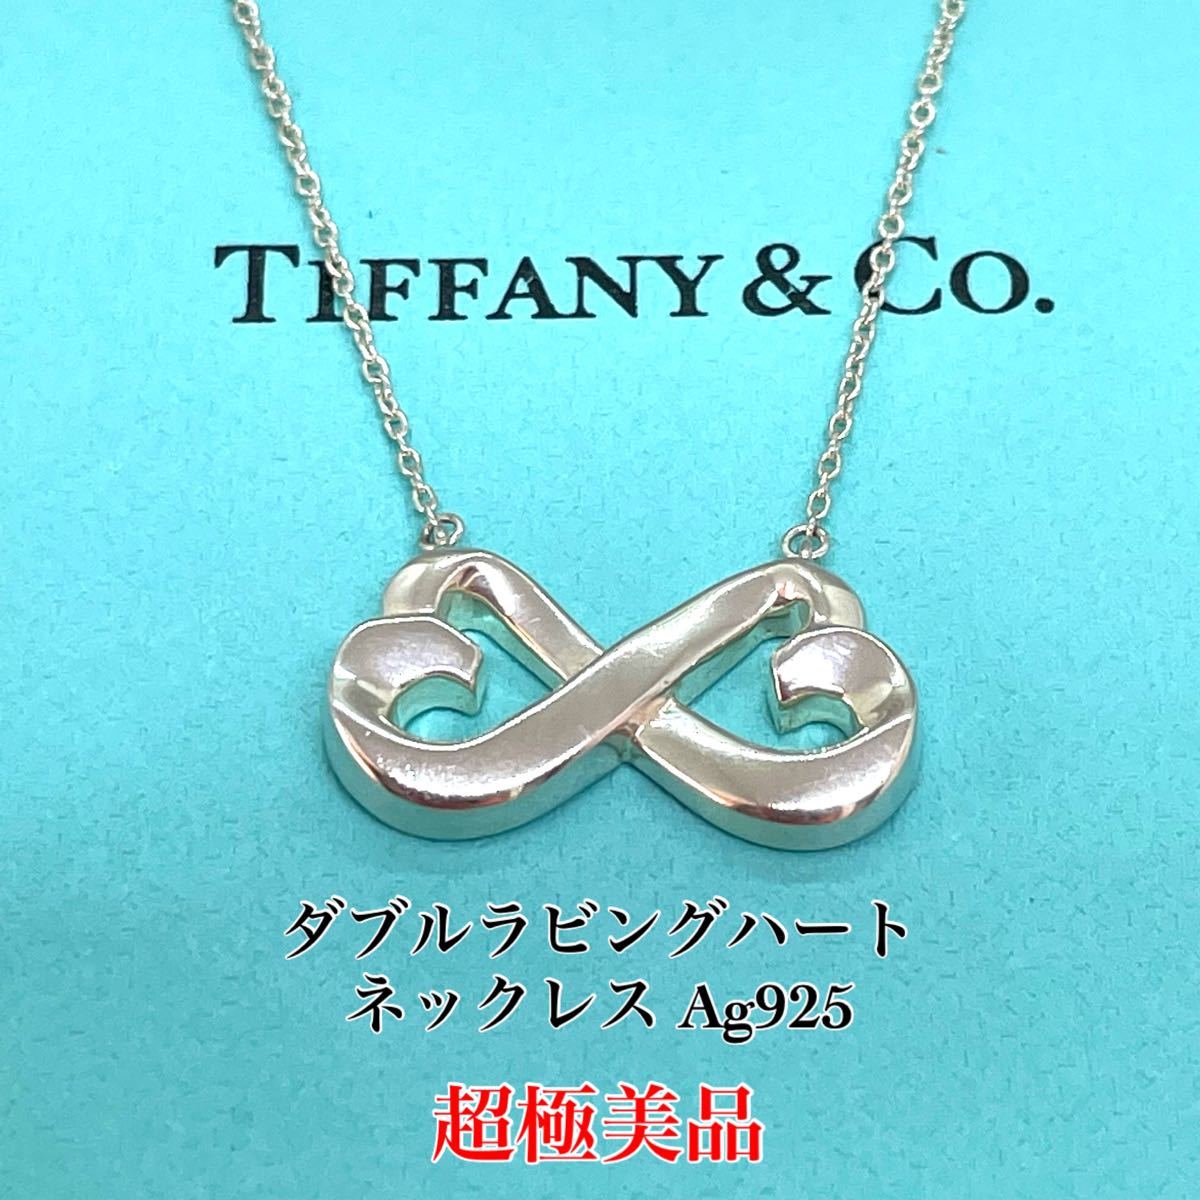 アウトレット直販店 TIFFANY&Co. Ag925 ネックレス インフィニティ 極美品 ネックレス